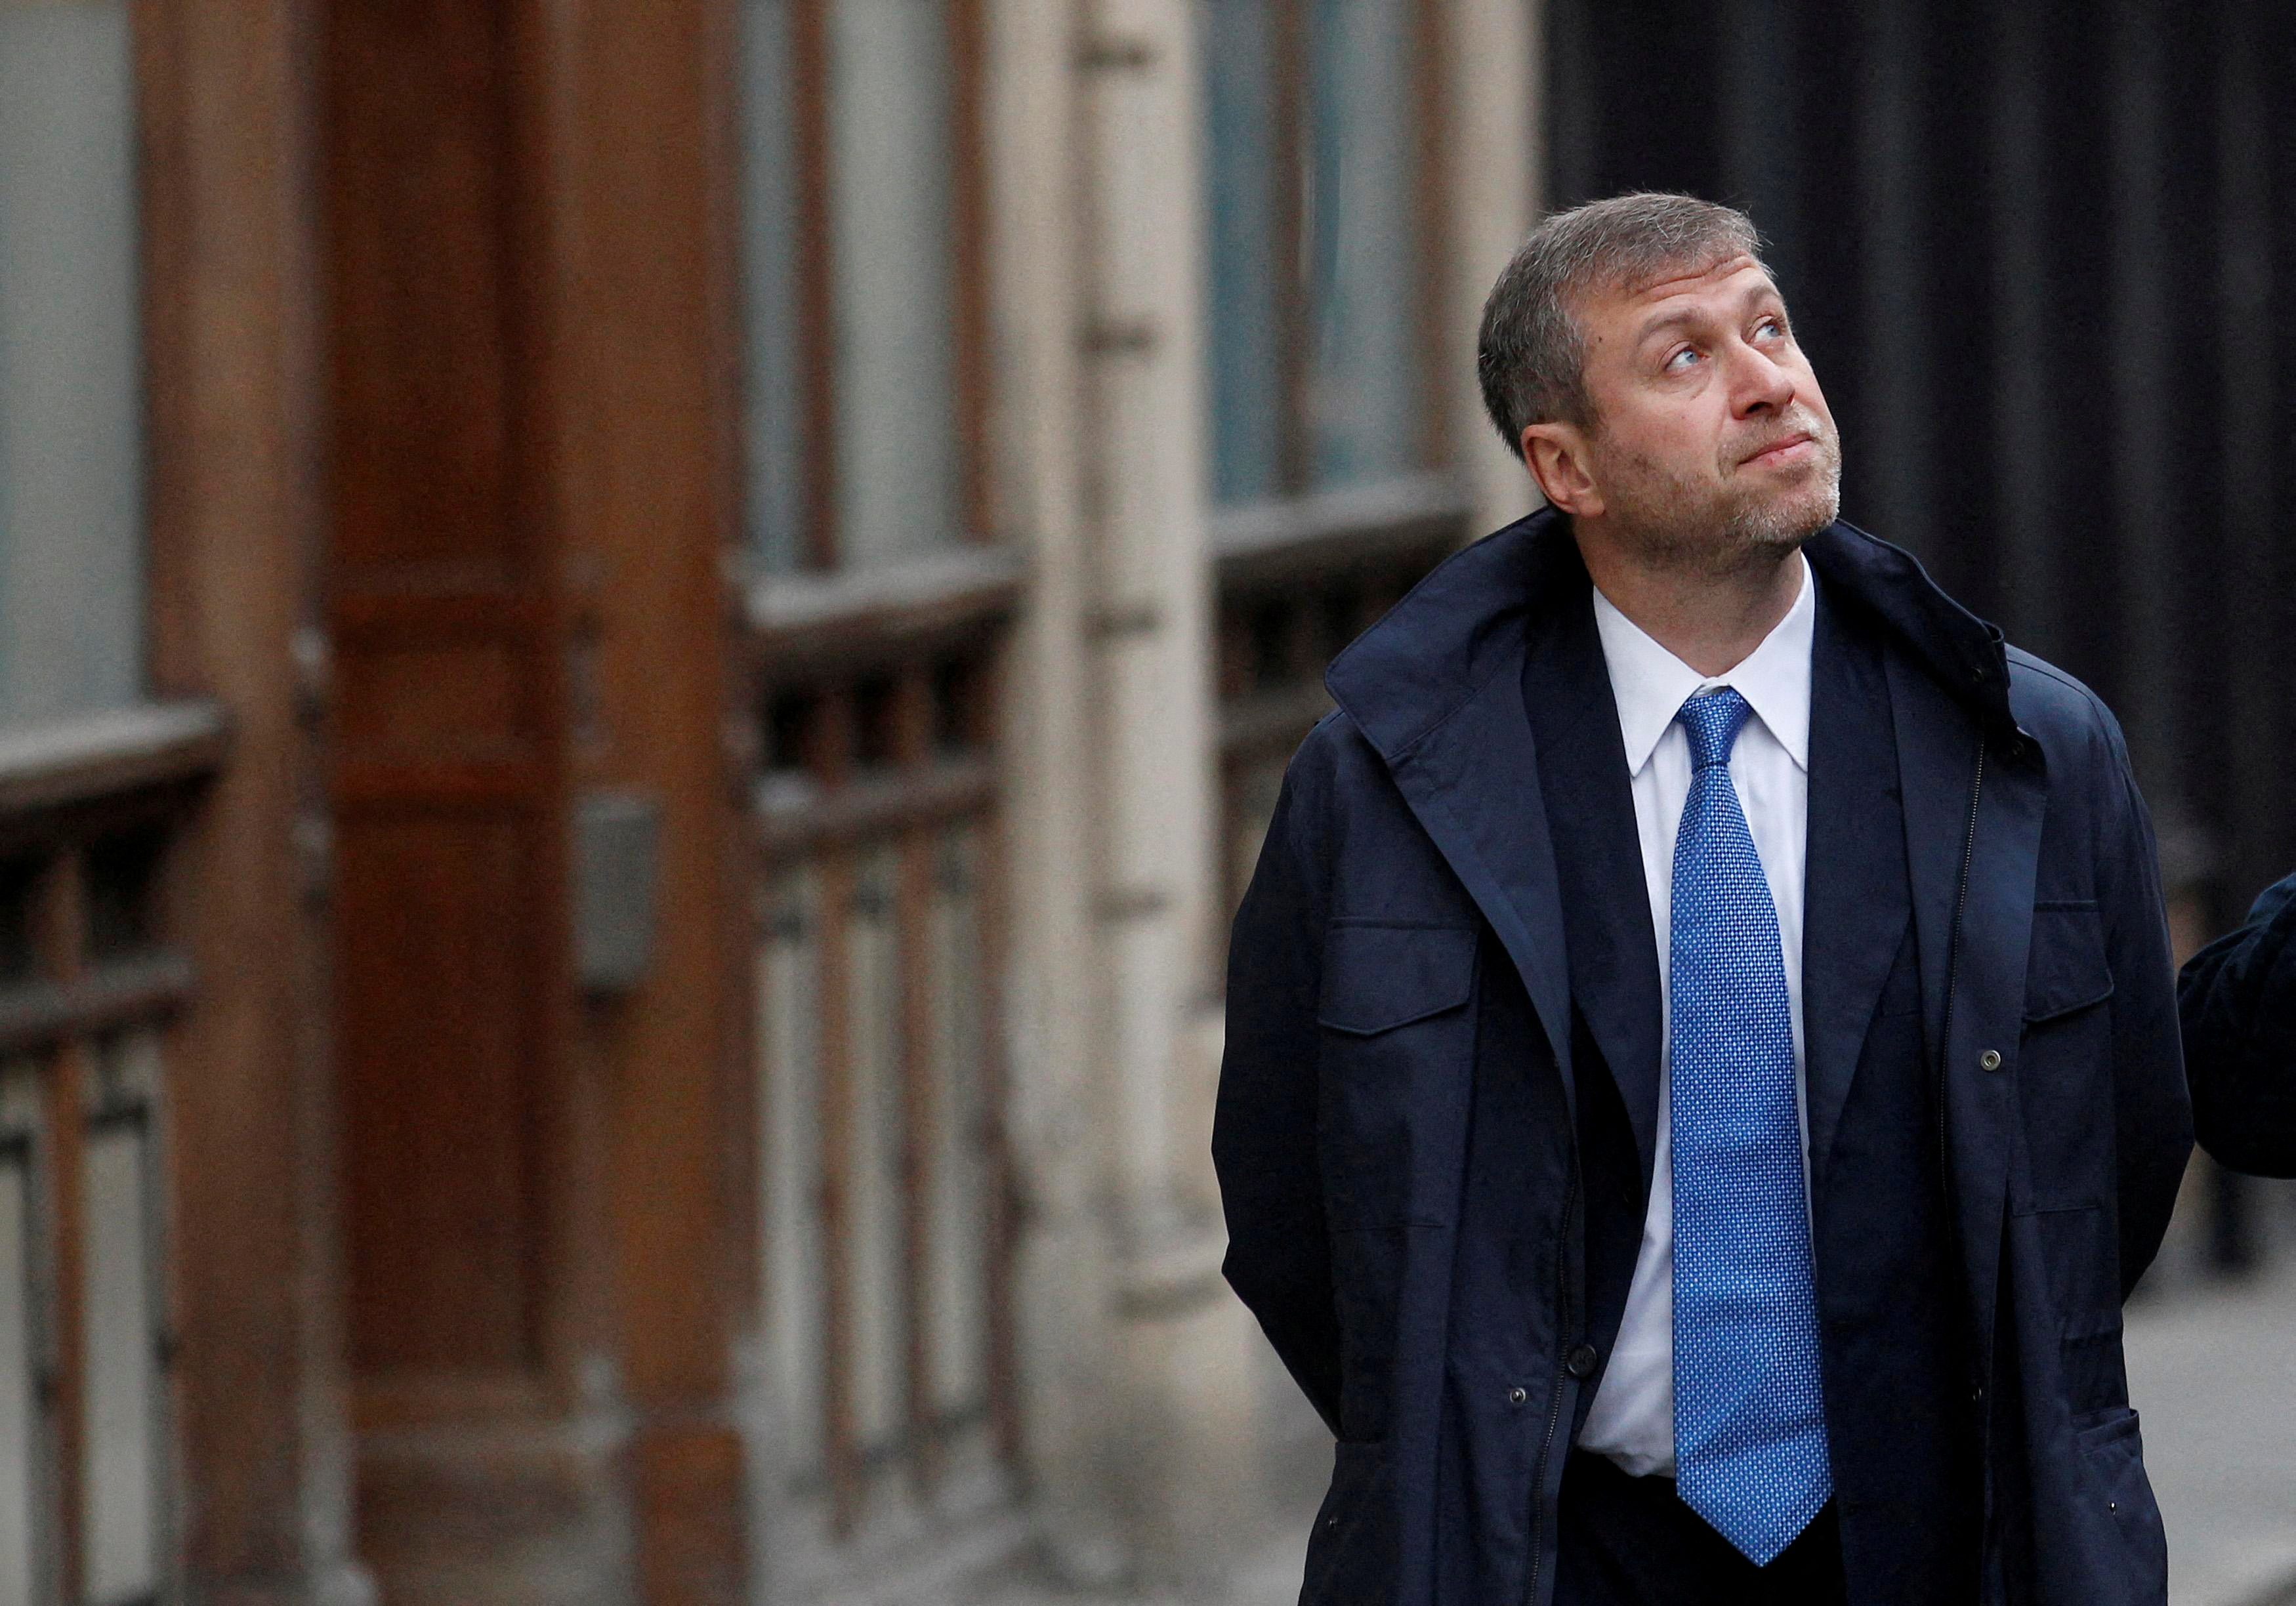 O proprietário do Chelsea Football Club, Roman Abramovich, caminha em frente ao Supremo Tribunal em Londres